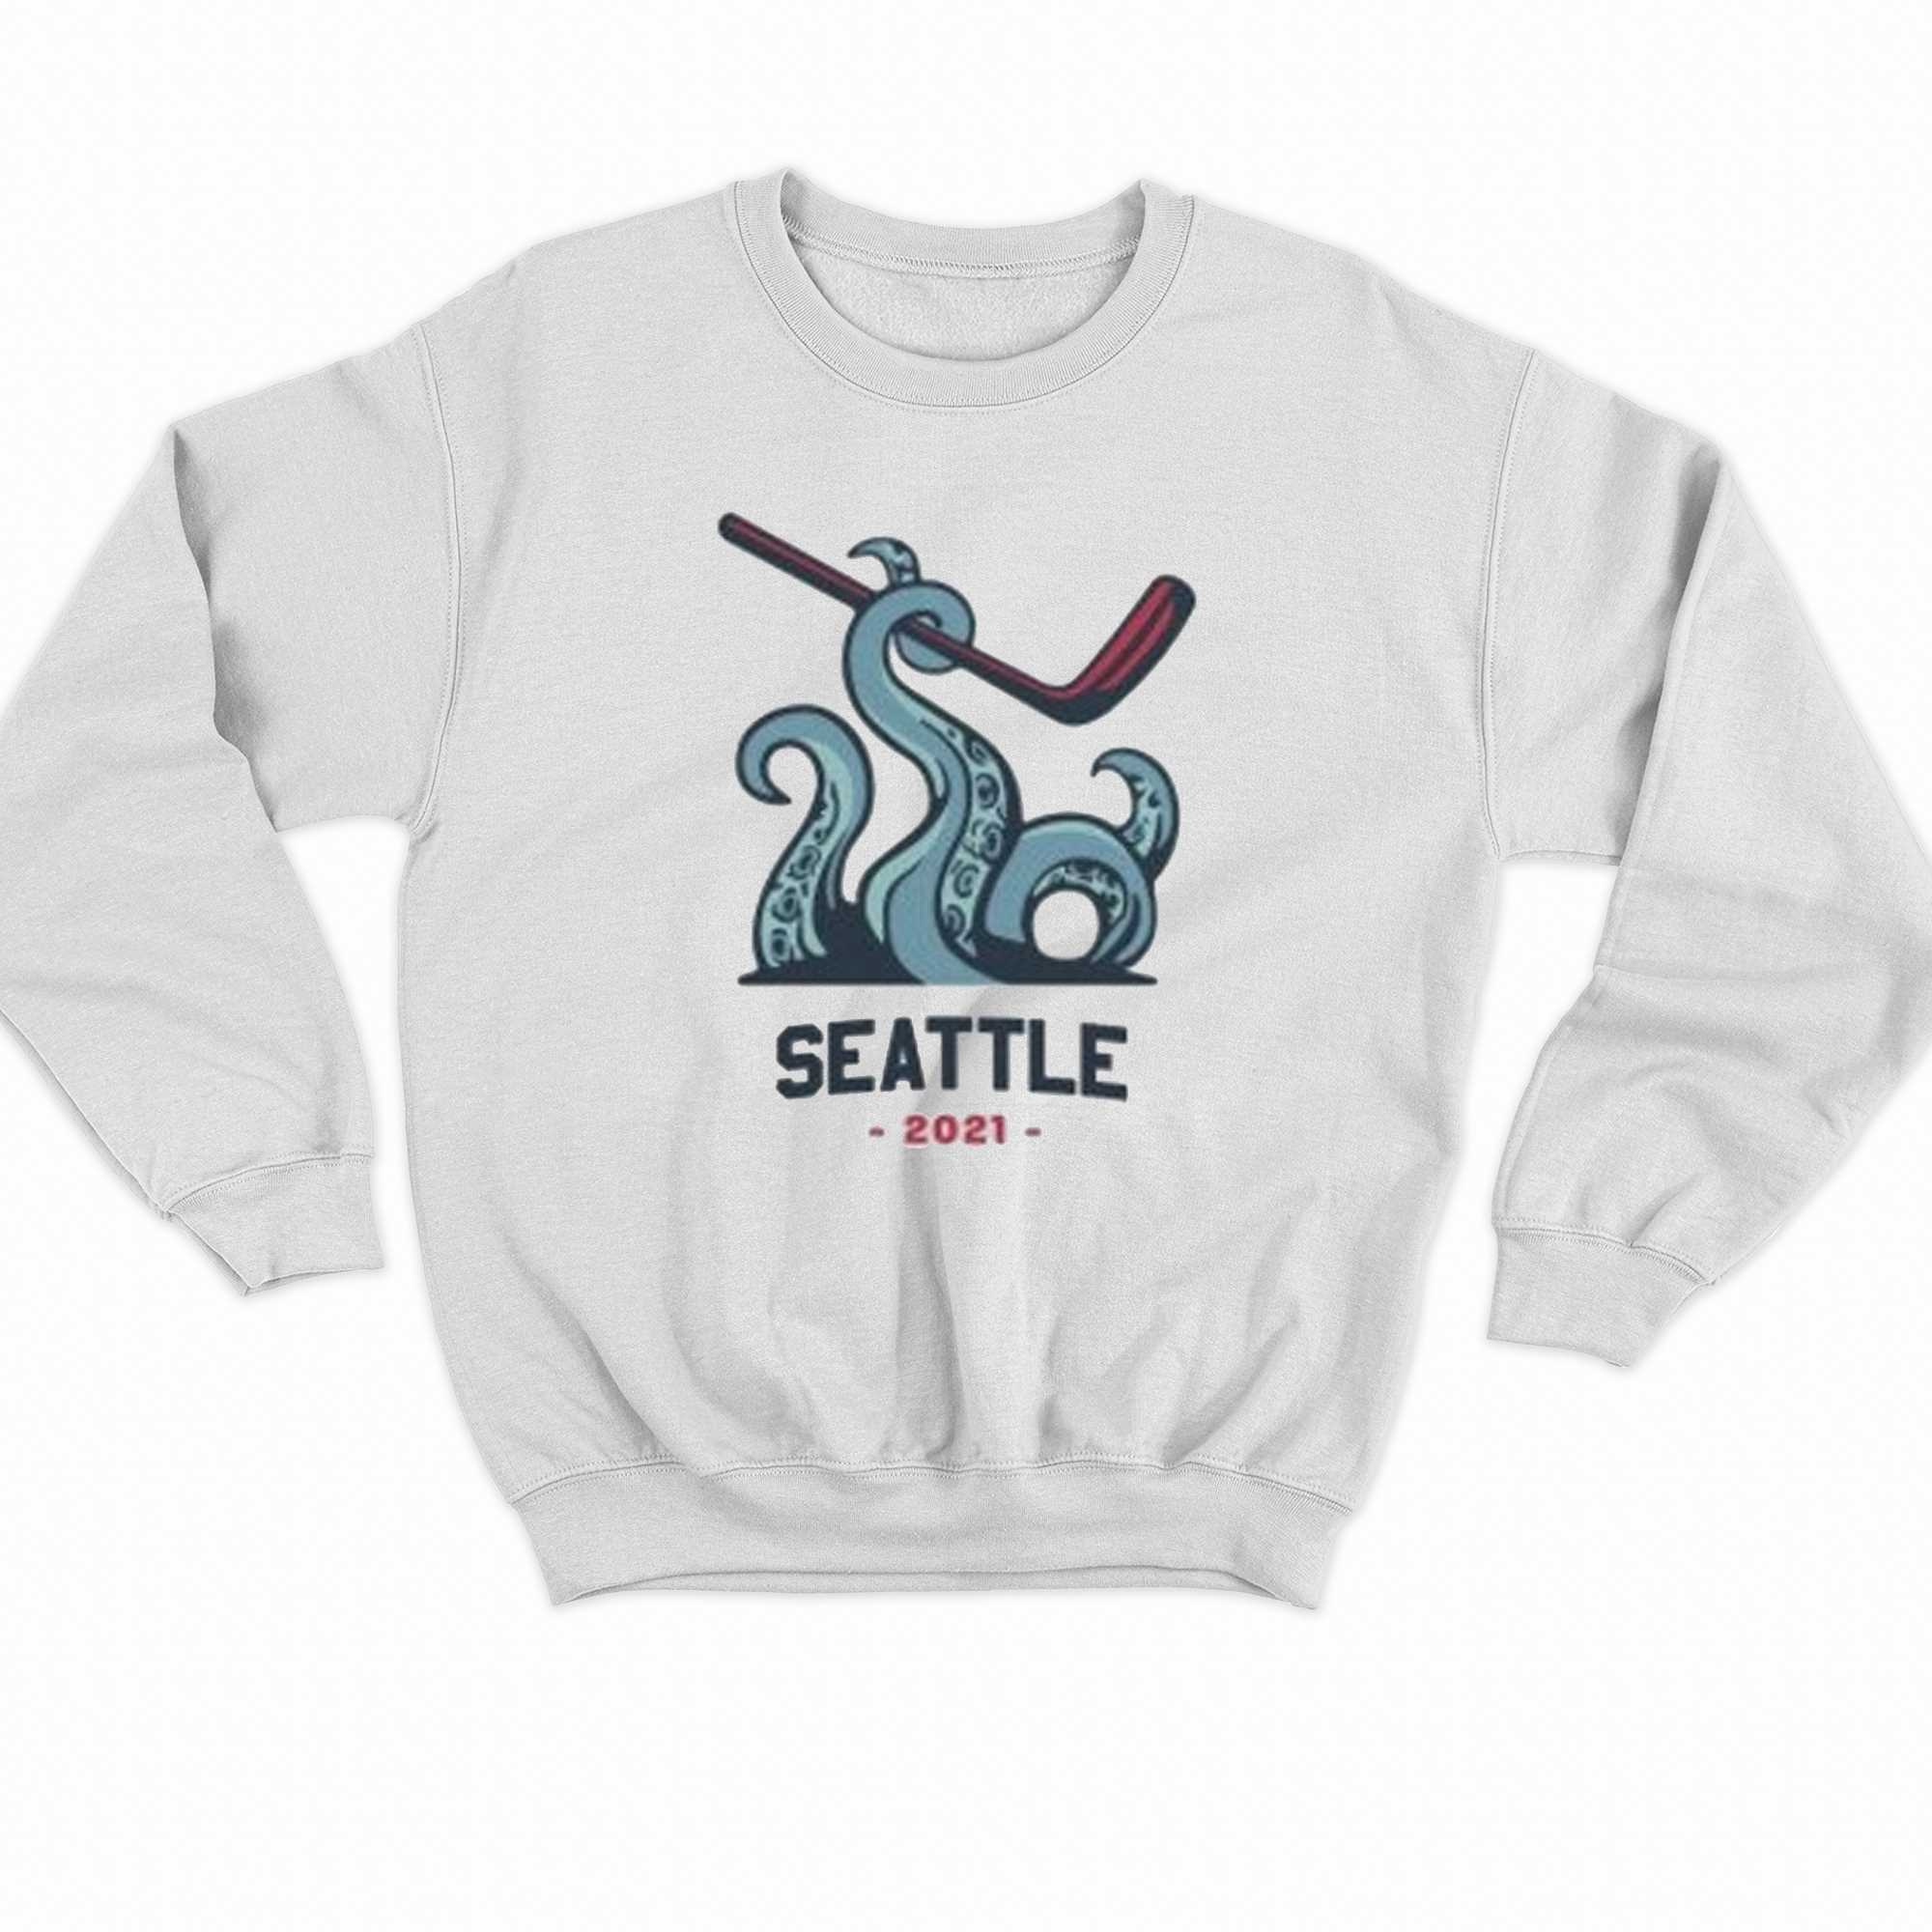 Seattle Kraken Women's Shirts & Hoodies